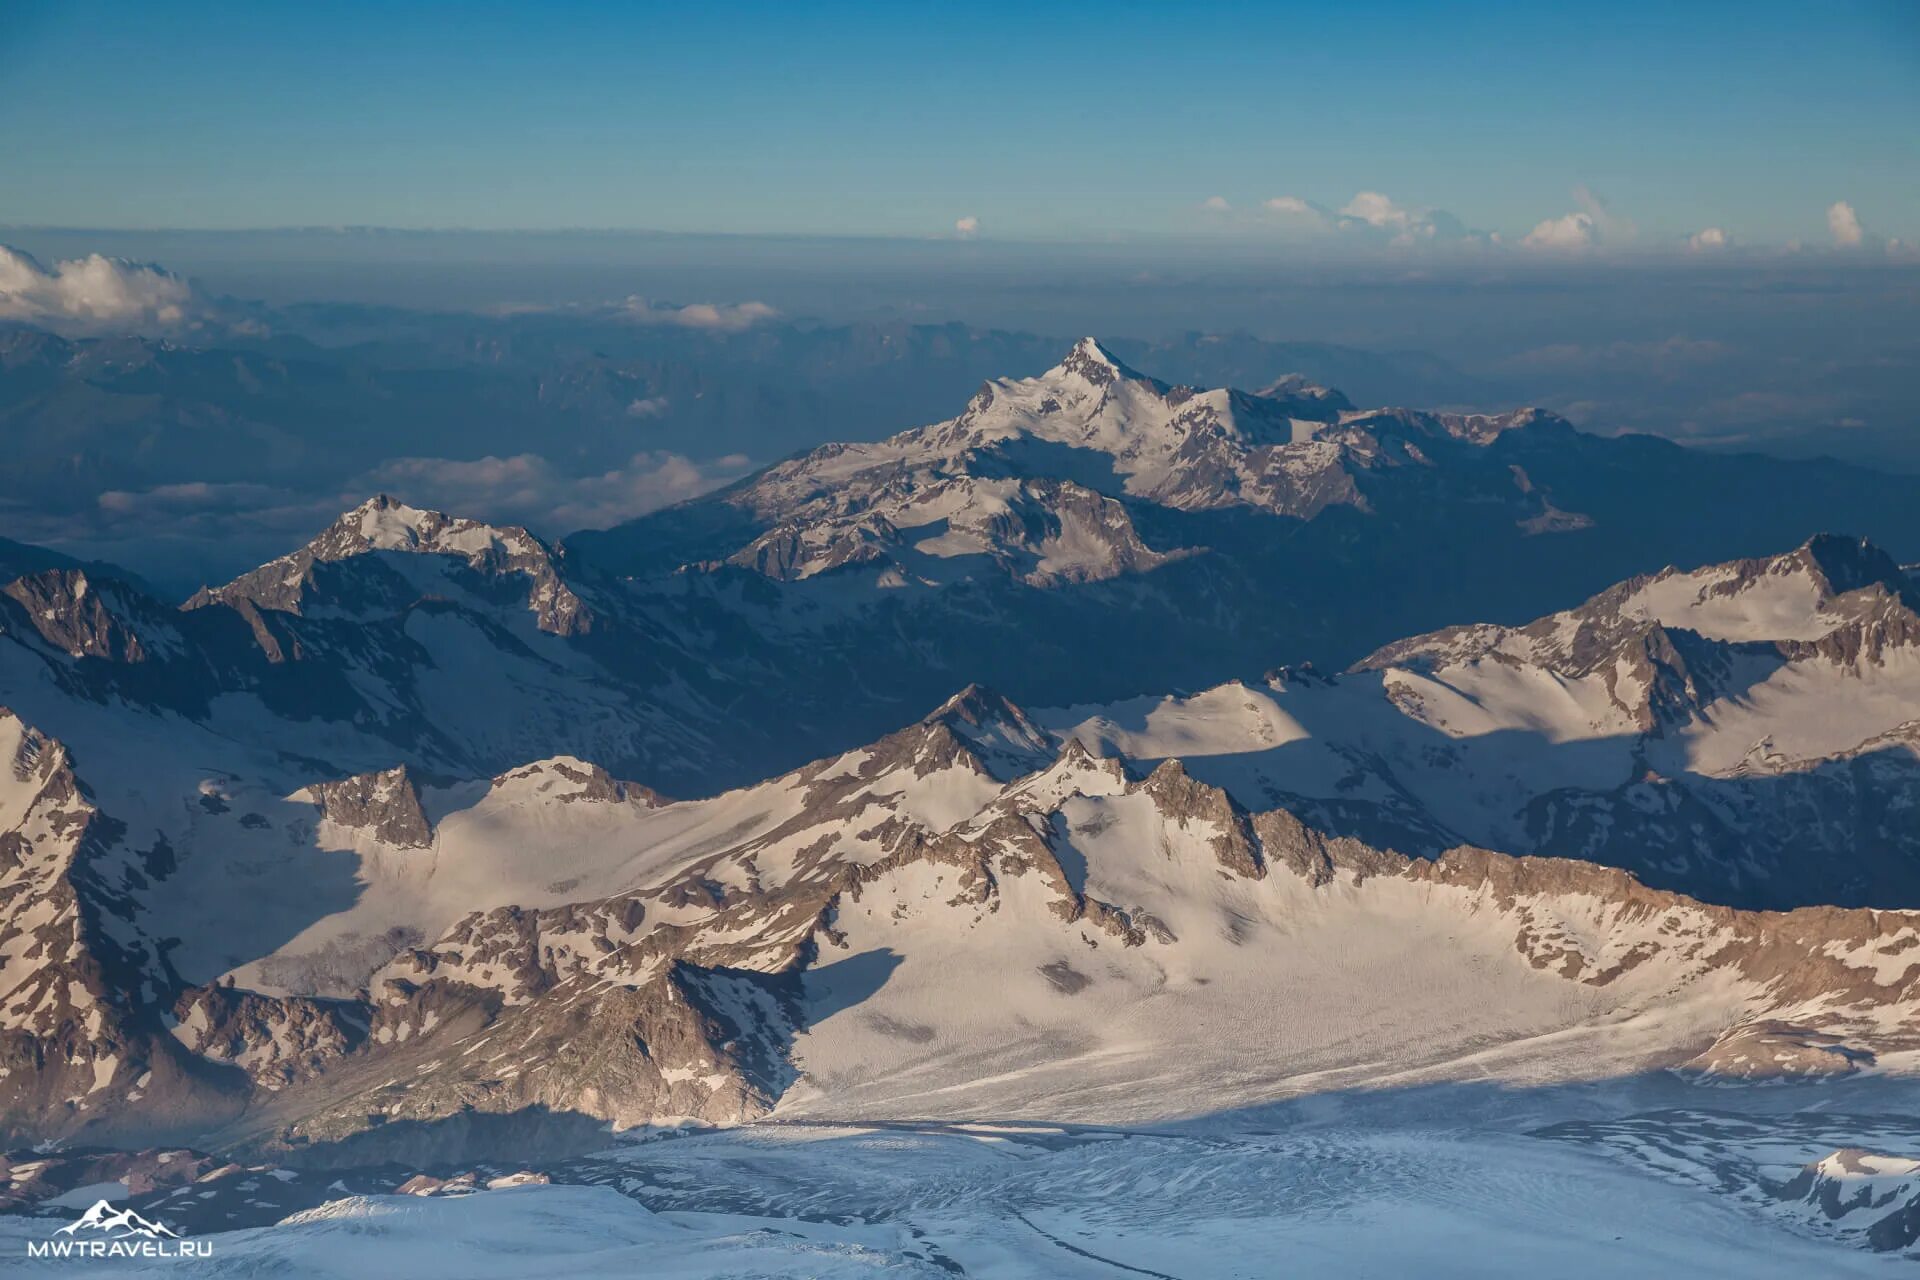 Горы Эльбрус кавказский хребет. Эльбрус вершина в Кавказском хребте. Большой кавказский хребет Эльбрус. Вид на Эльбрус и кавказский хребет.